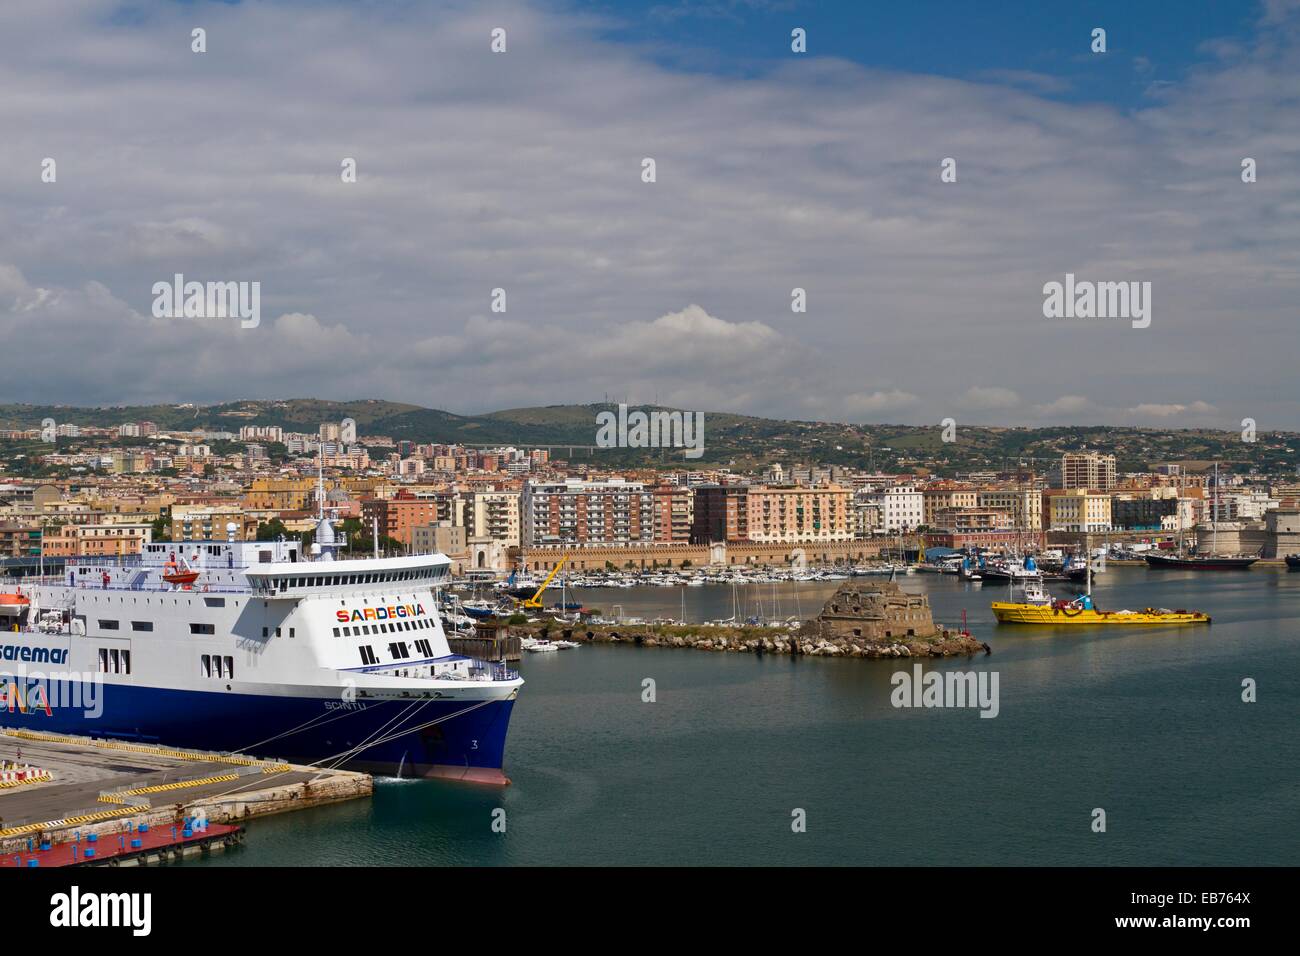 The port of Civitavecchia near Rome Italy Stock Photo